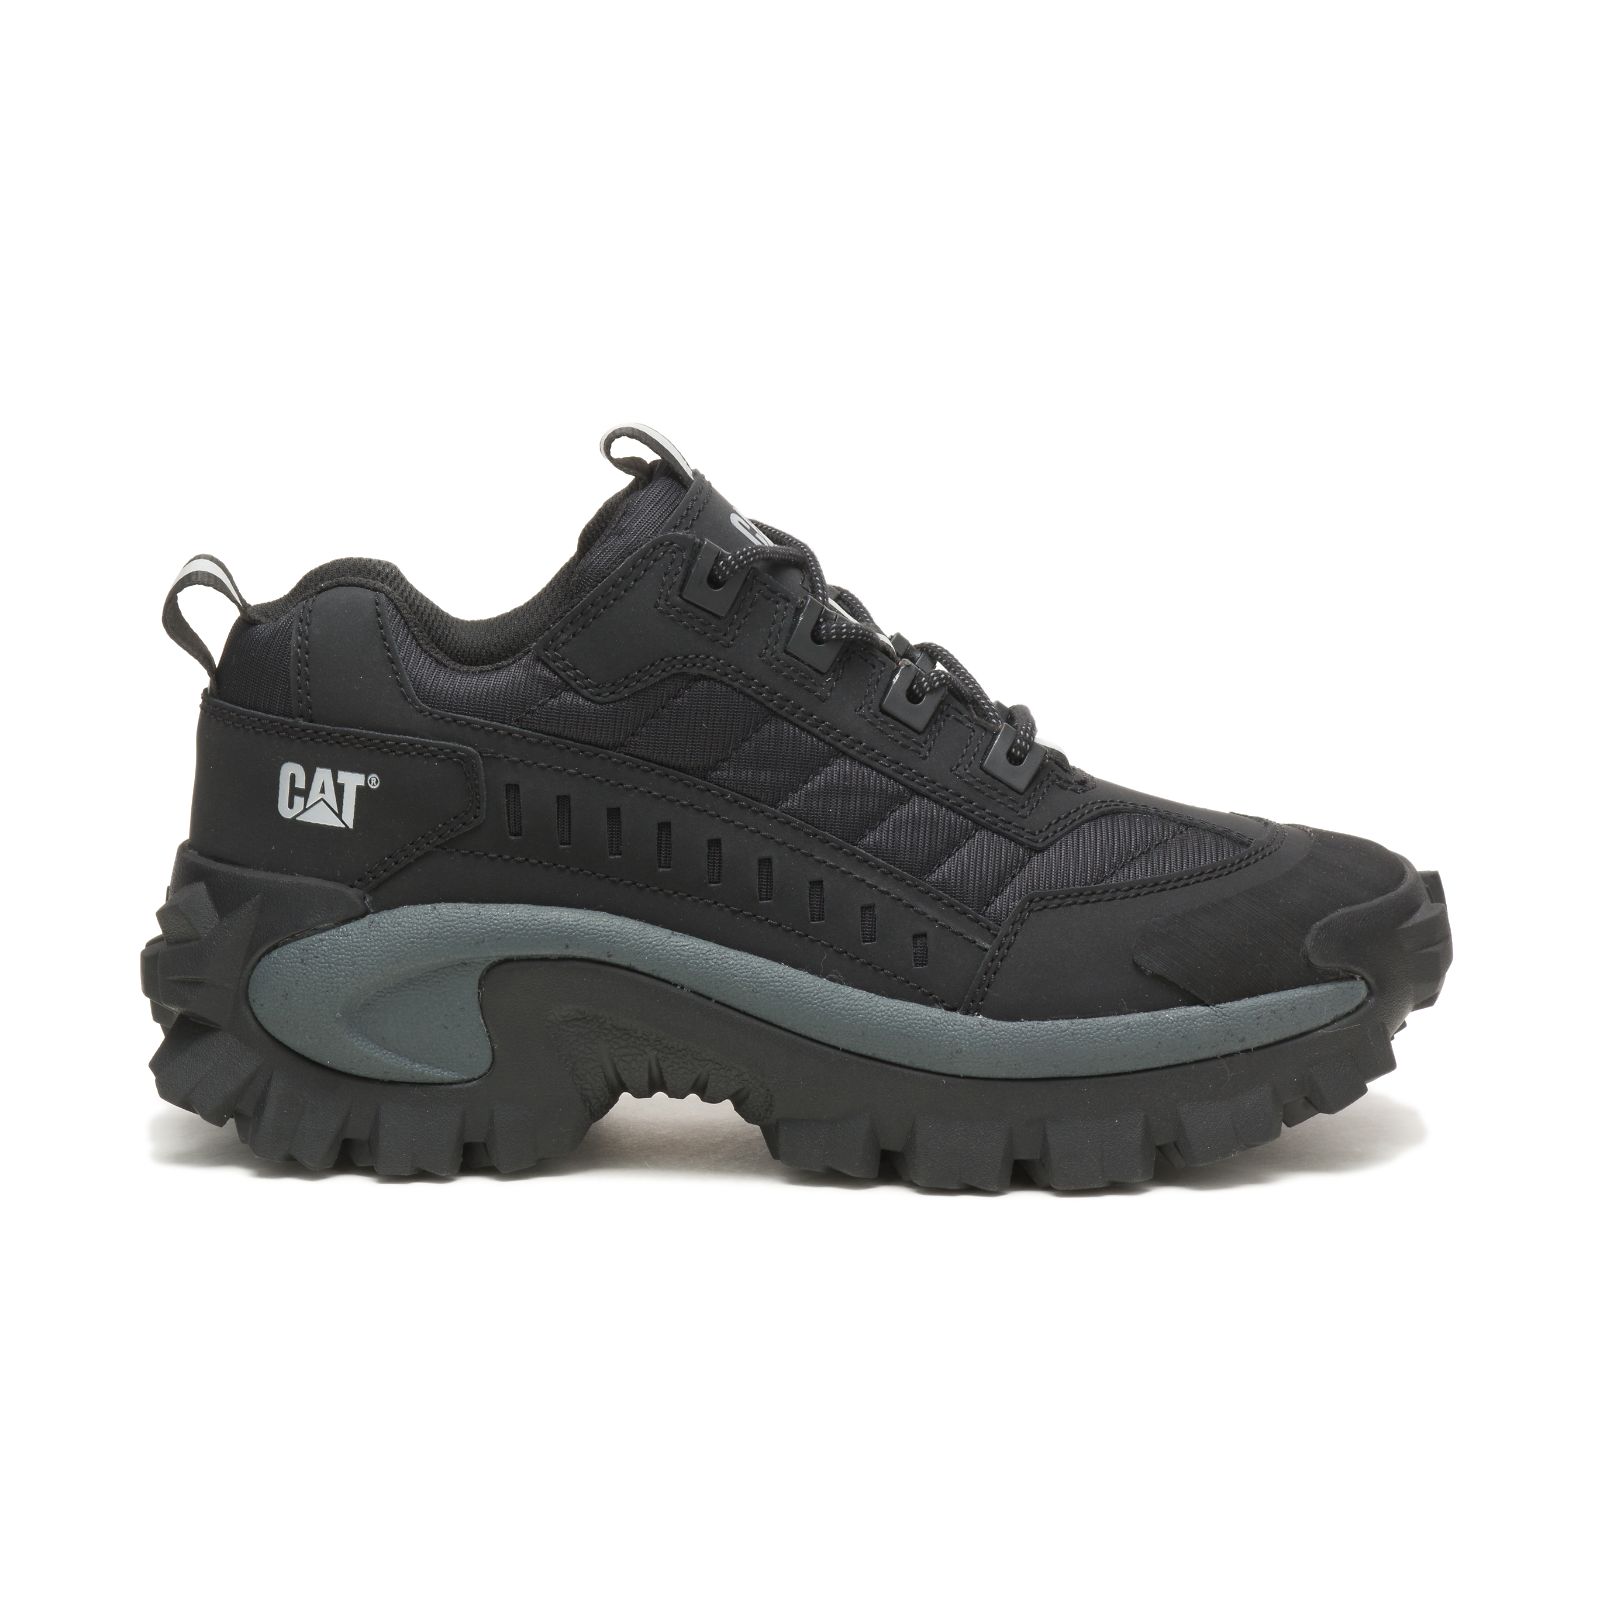 Caterpillar Shoes Online - Caterpillar Intruder Womens Casual Shoes Black/Dark Grey (657108-BPZ)